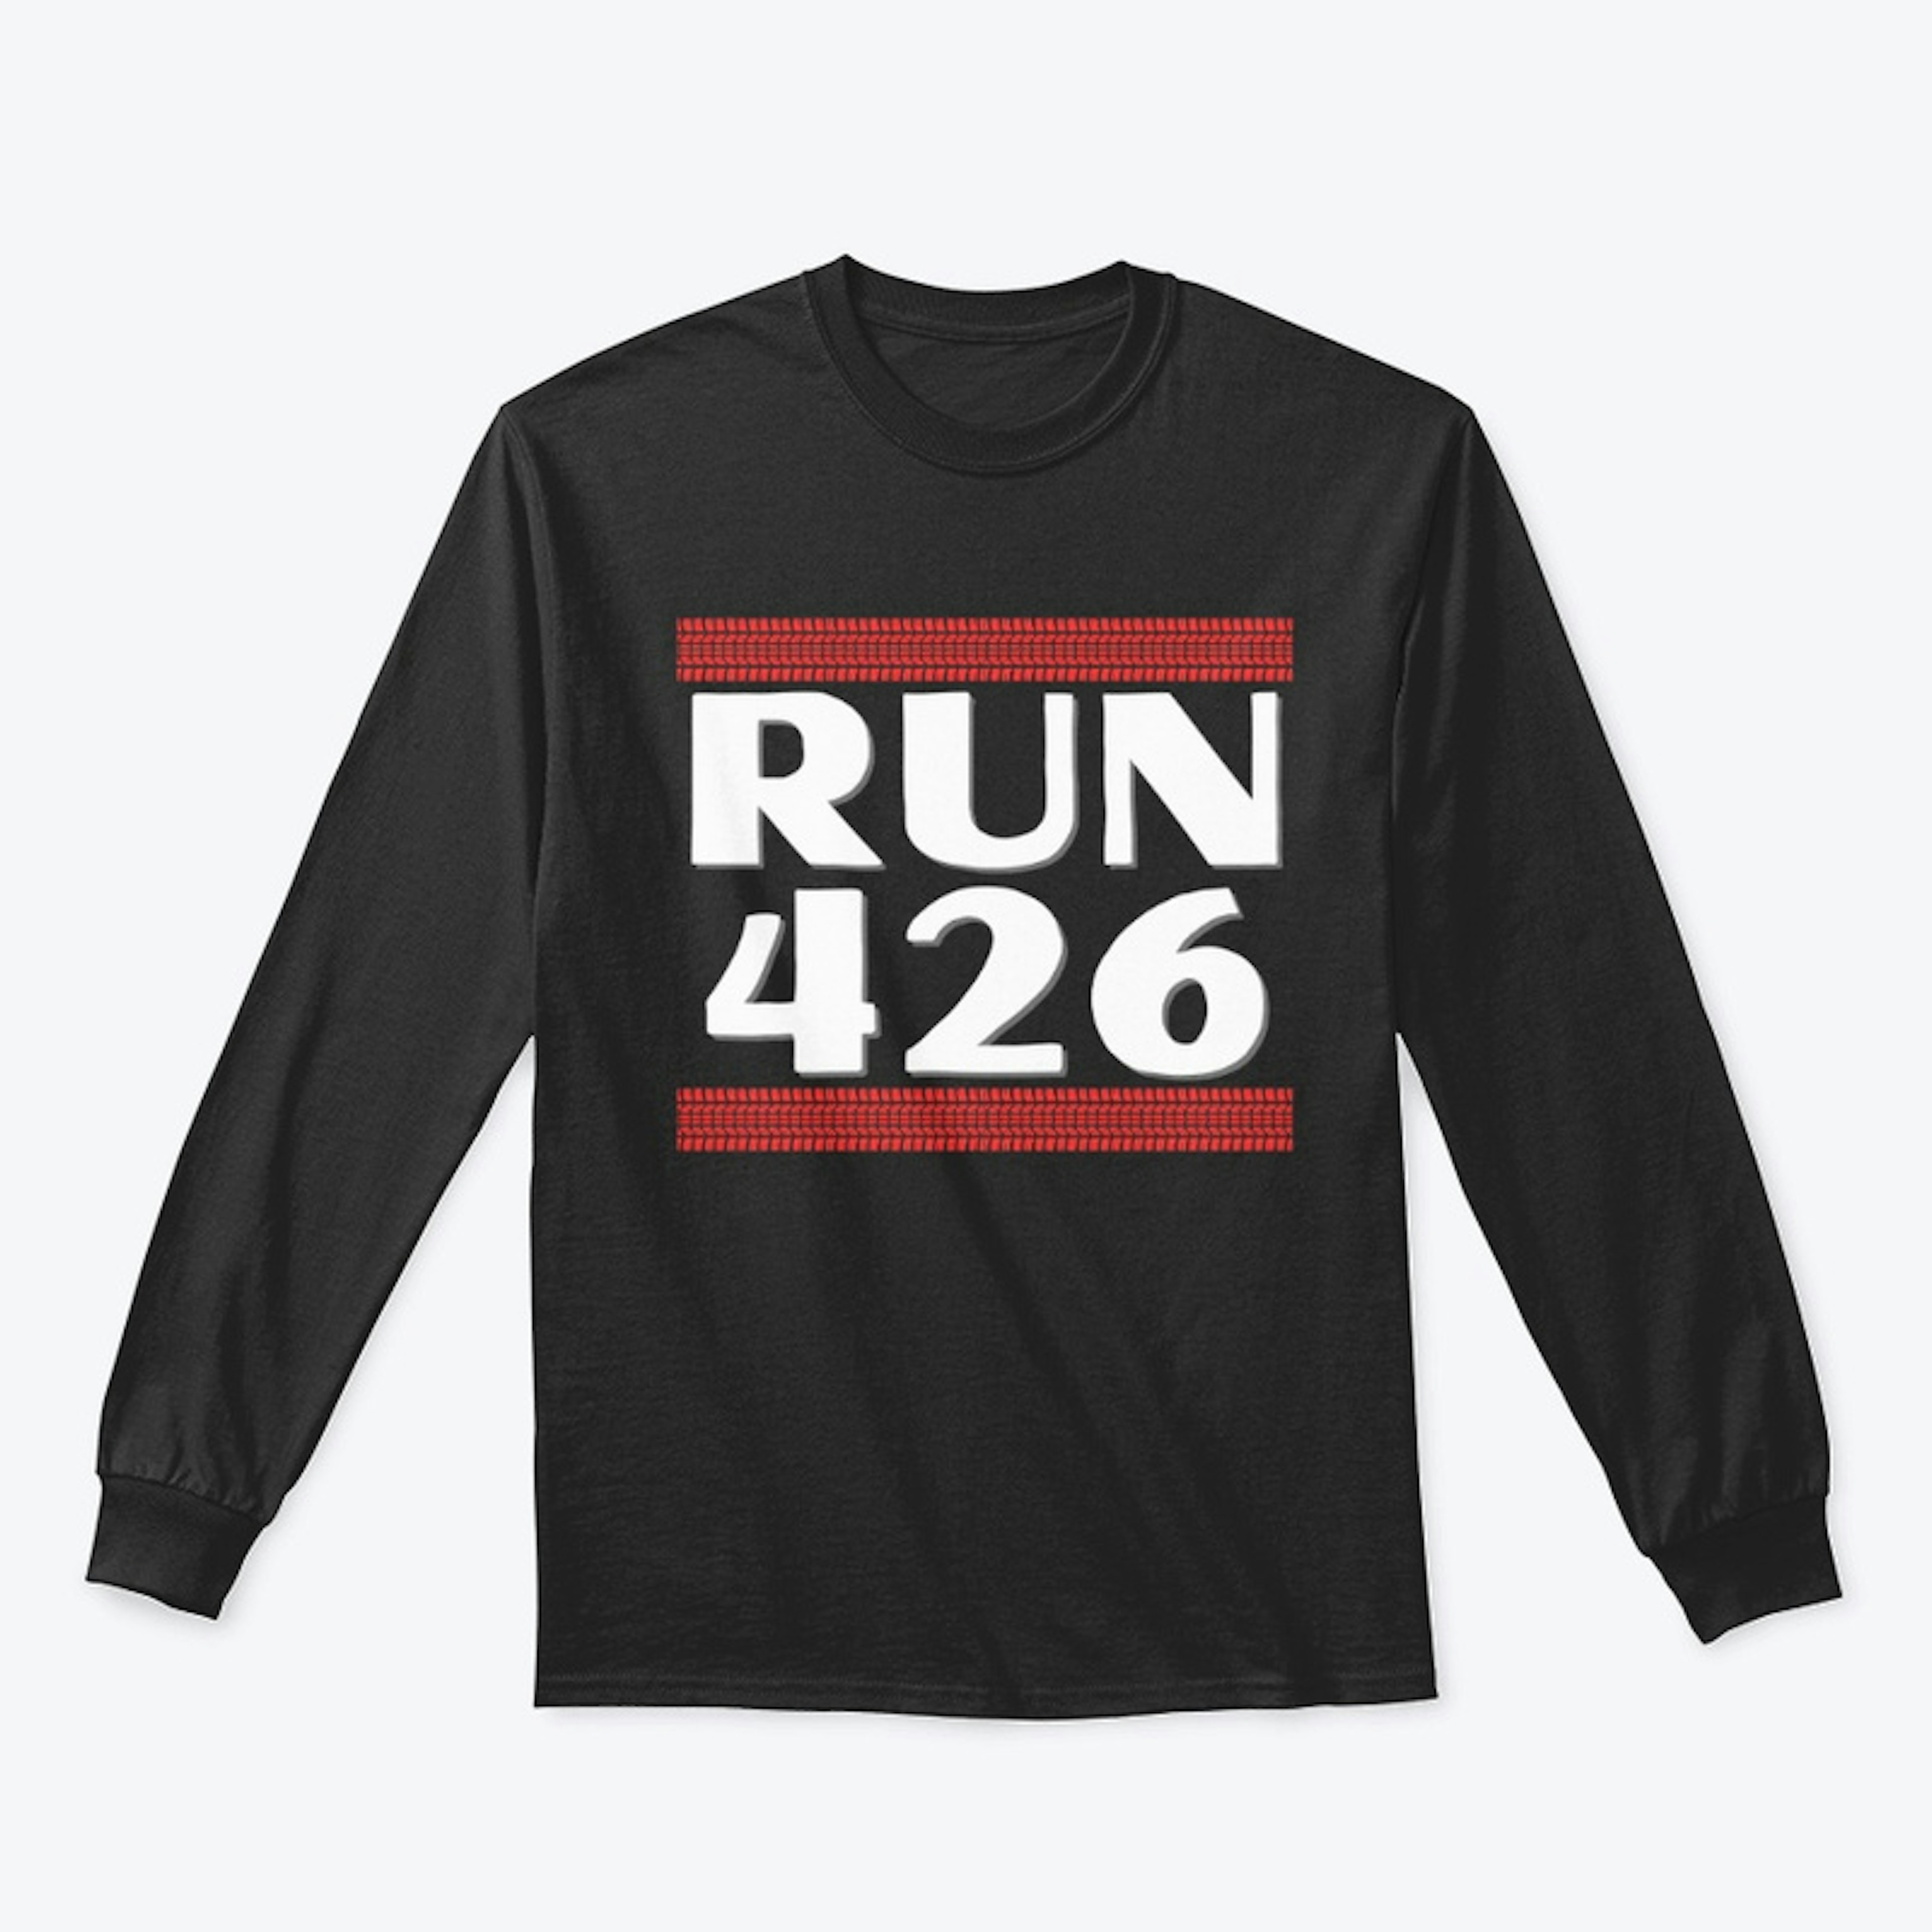 Run 426